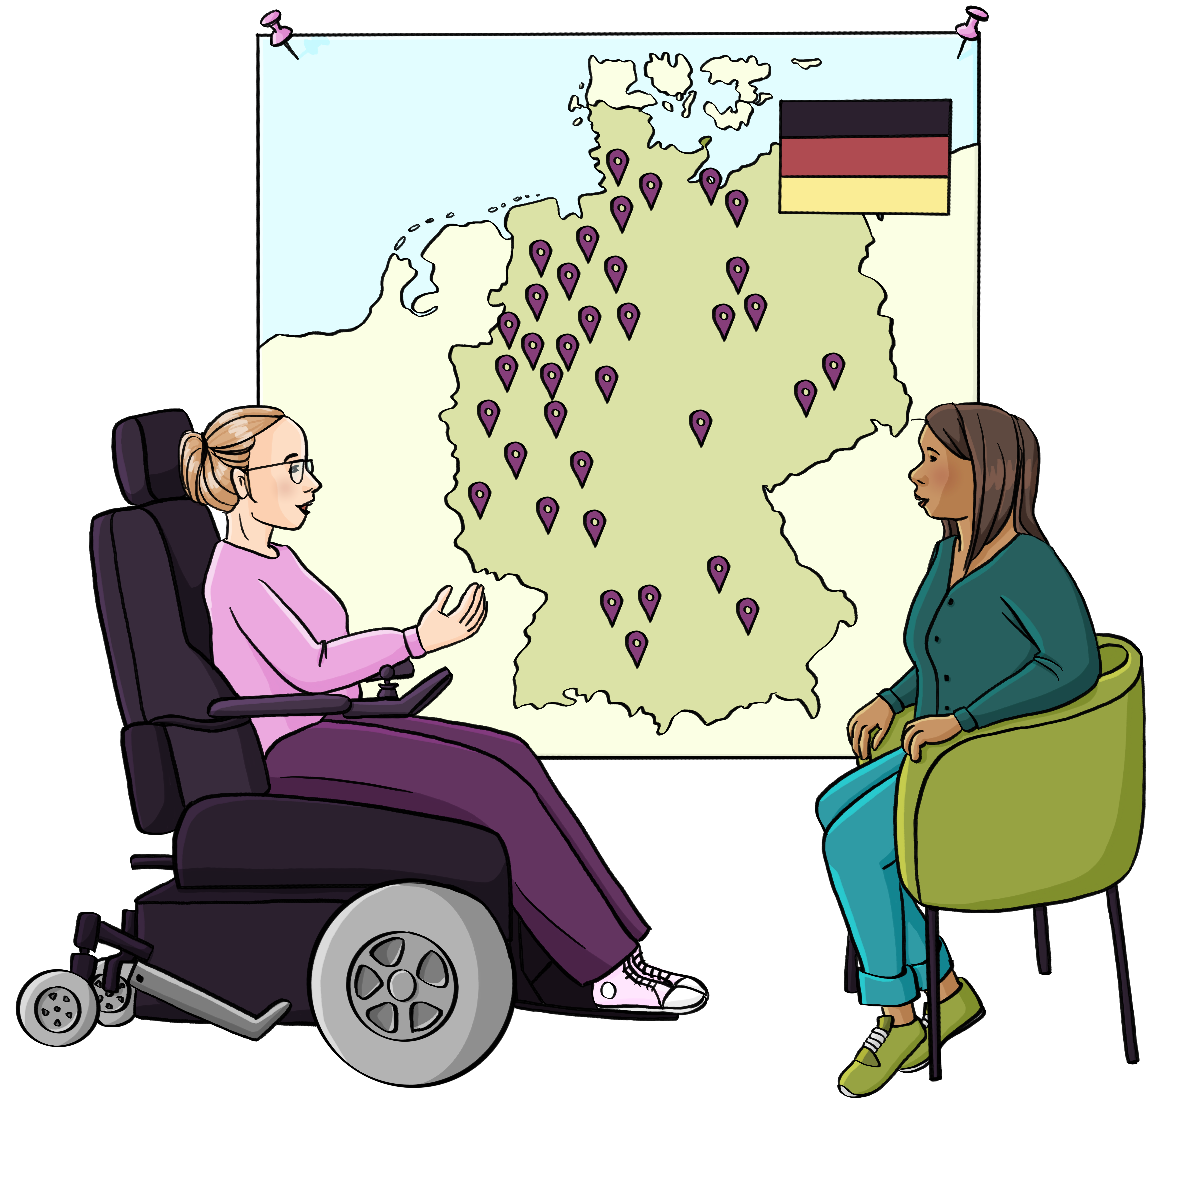 Eine Frau im Elektrorollstuhl und eine andere Frau sitzen sich gegenüber. An der Wand hängt eine große Deutschlandkarte mit vielen kleinen Markierungen.